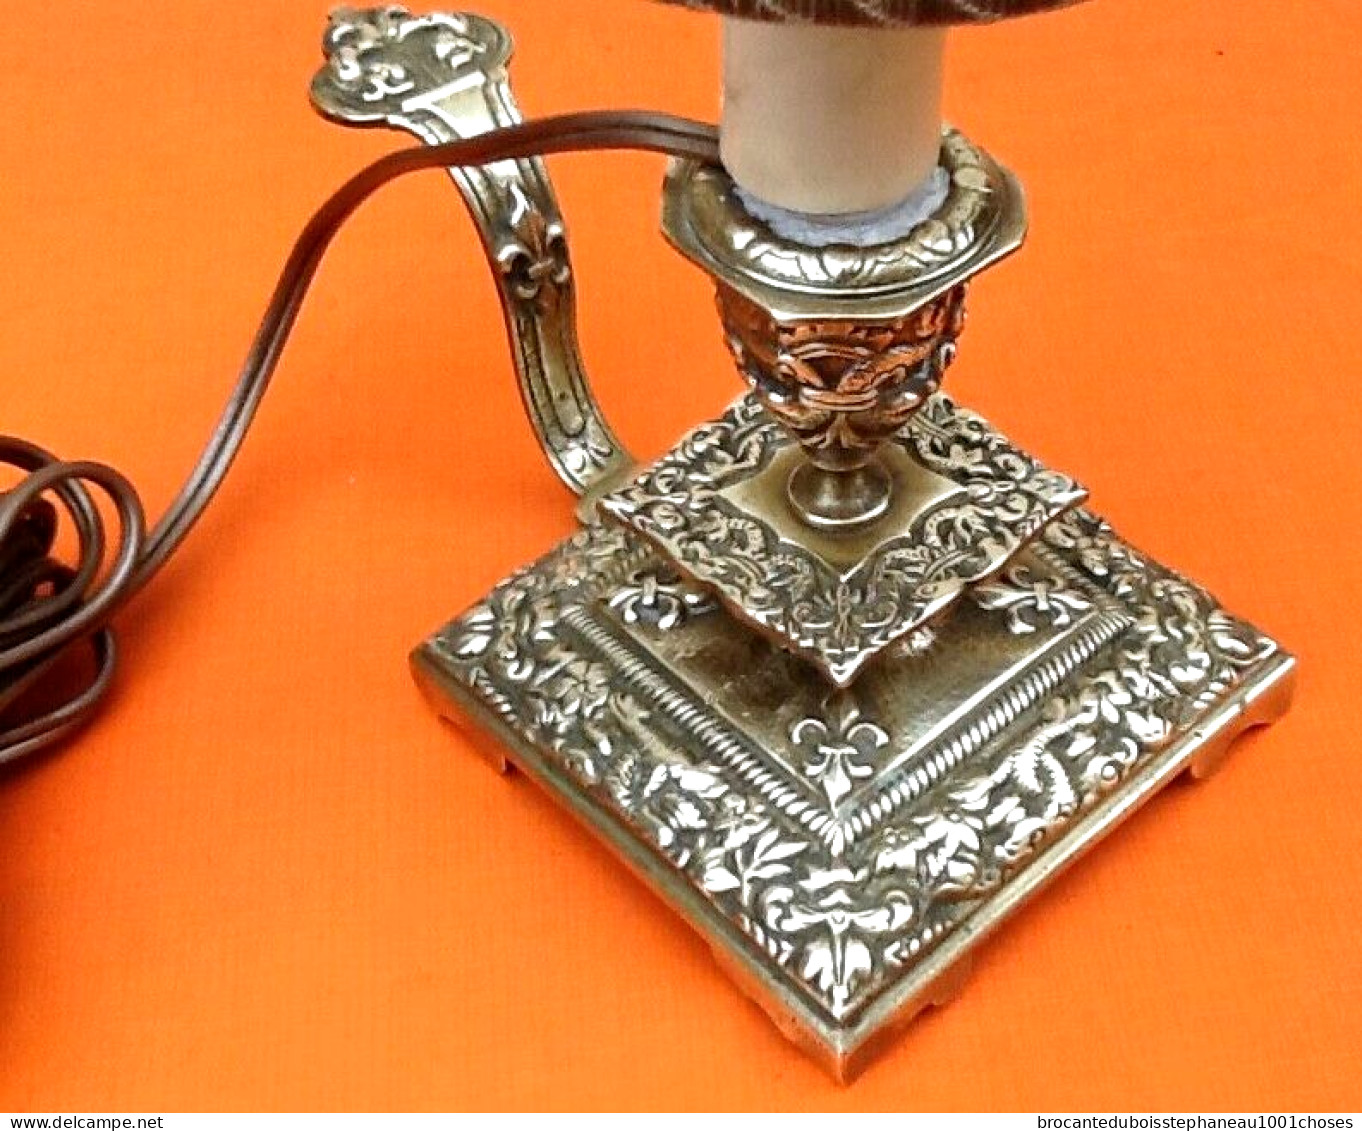 Epoque fin XIXème Lampe à poser Bougeoir à main Abat jour demi-bouclier à pince  Bronze ciselé